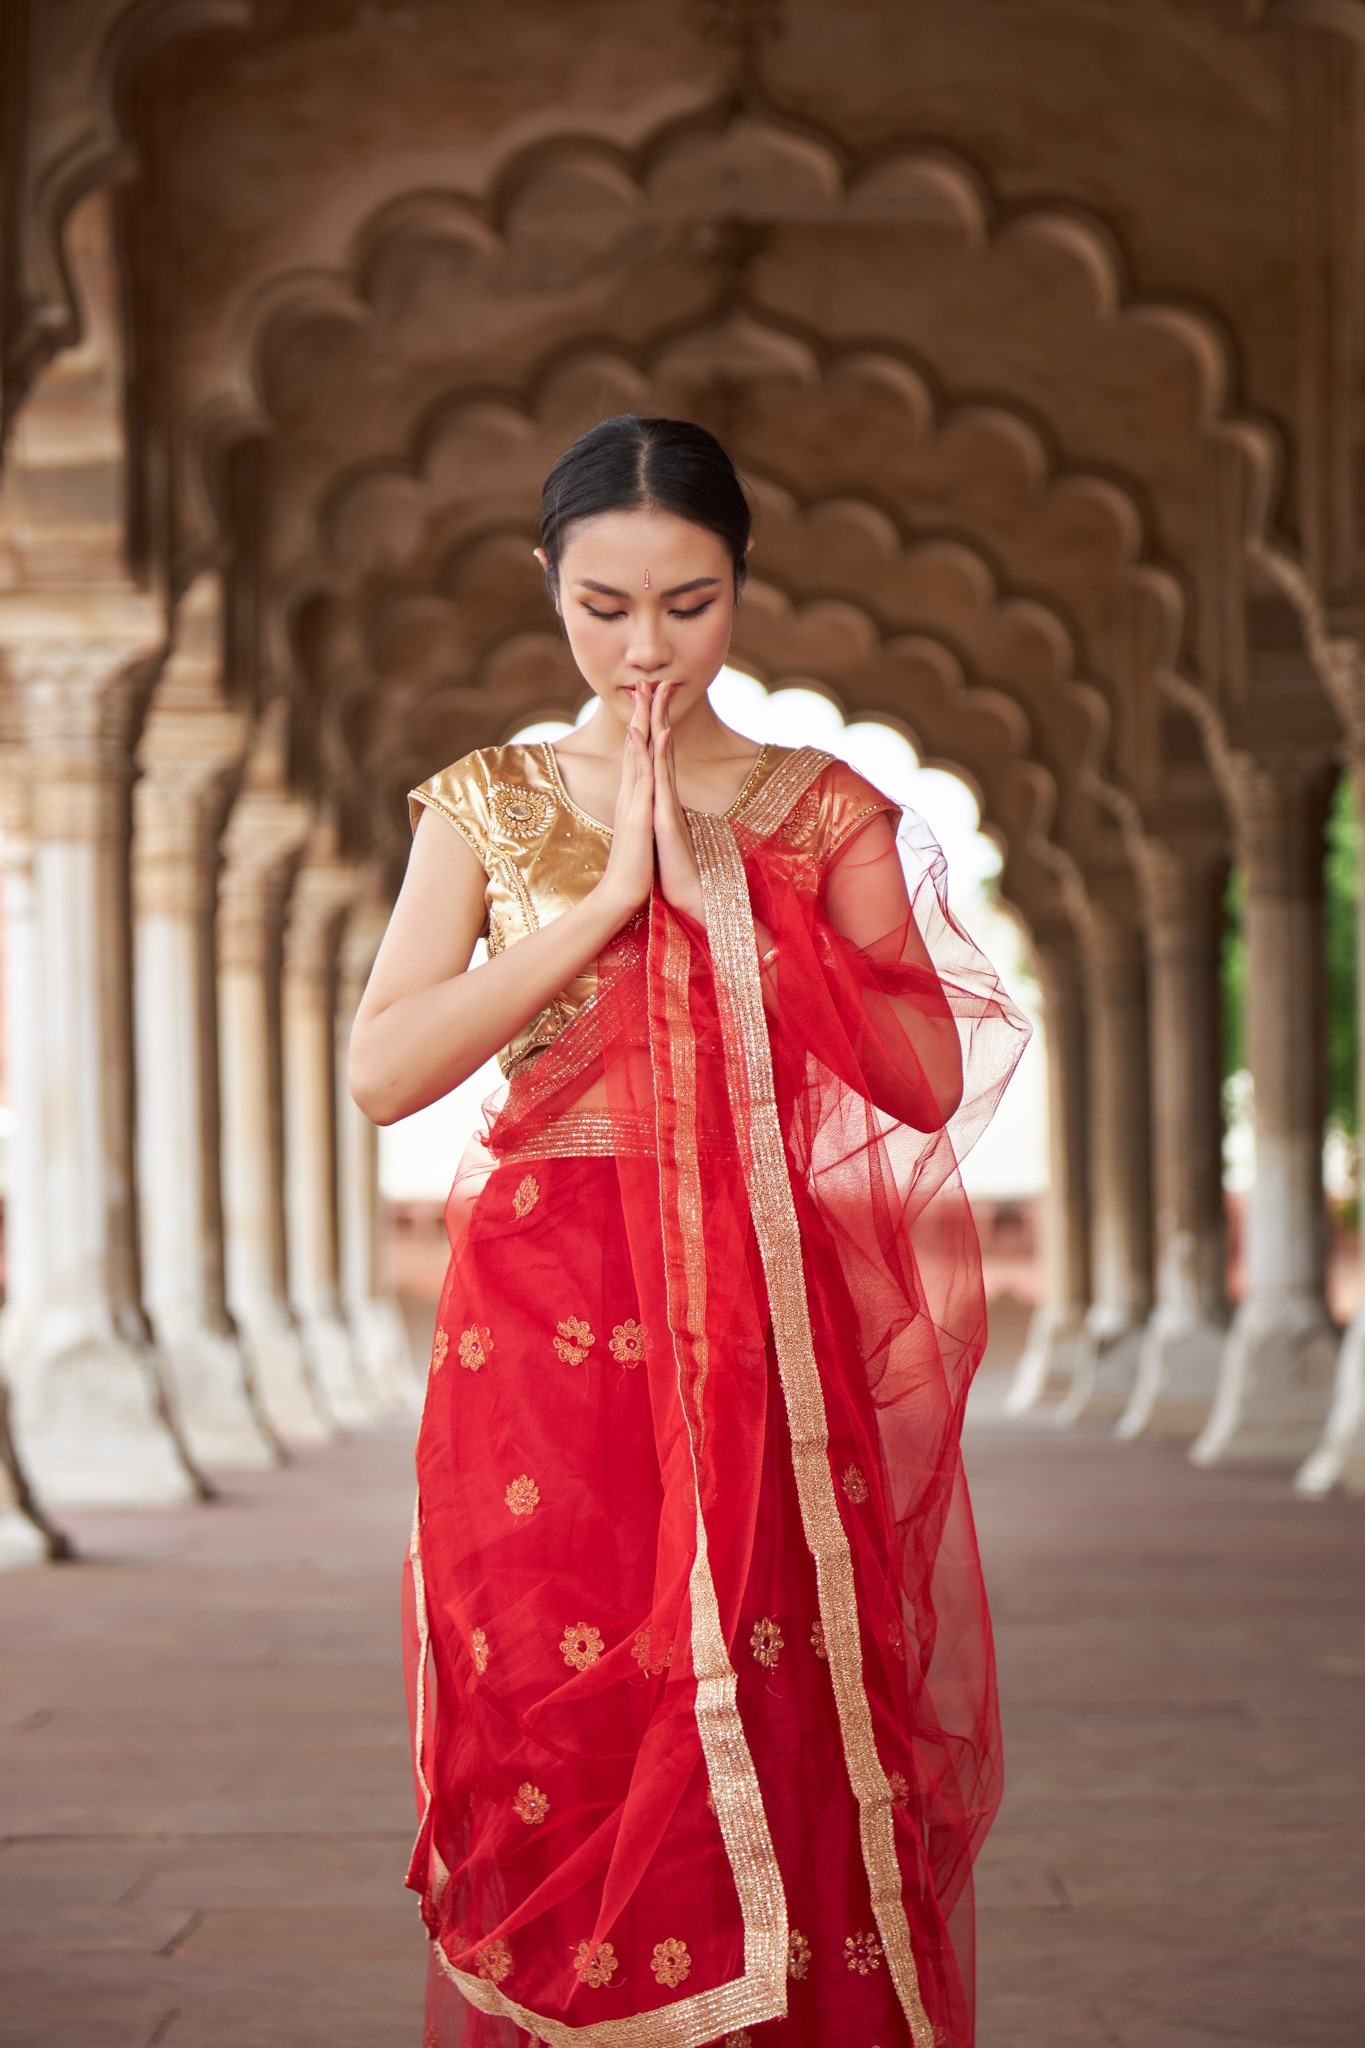 Langa Voni là trang phục truyền thống của phụ nữ Ấn Độ. Khoác trên mình bộ trang phục trang nhã và đài cát, Thủy Tiên vô cùng xinh đẹp và cuốn hút.